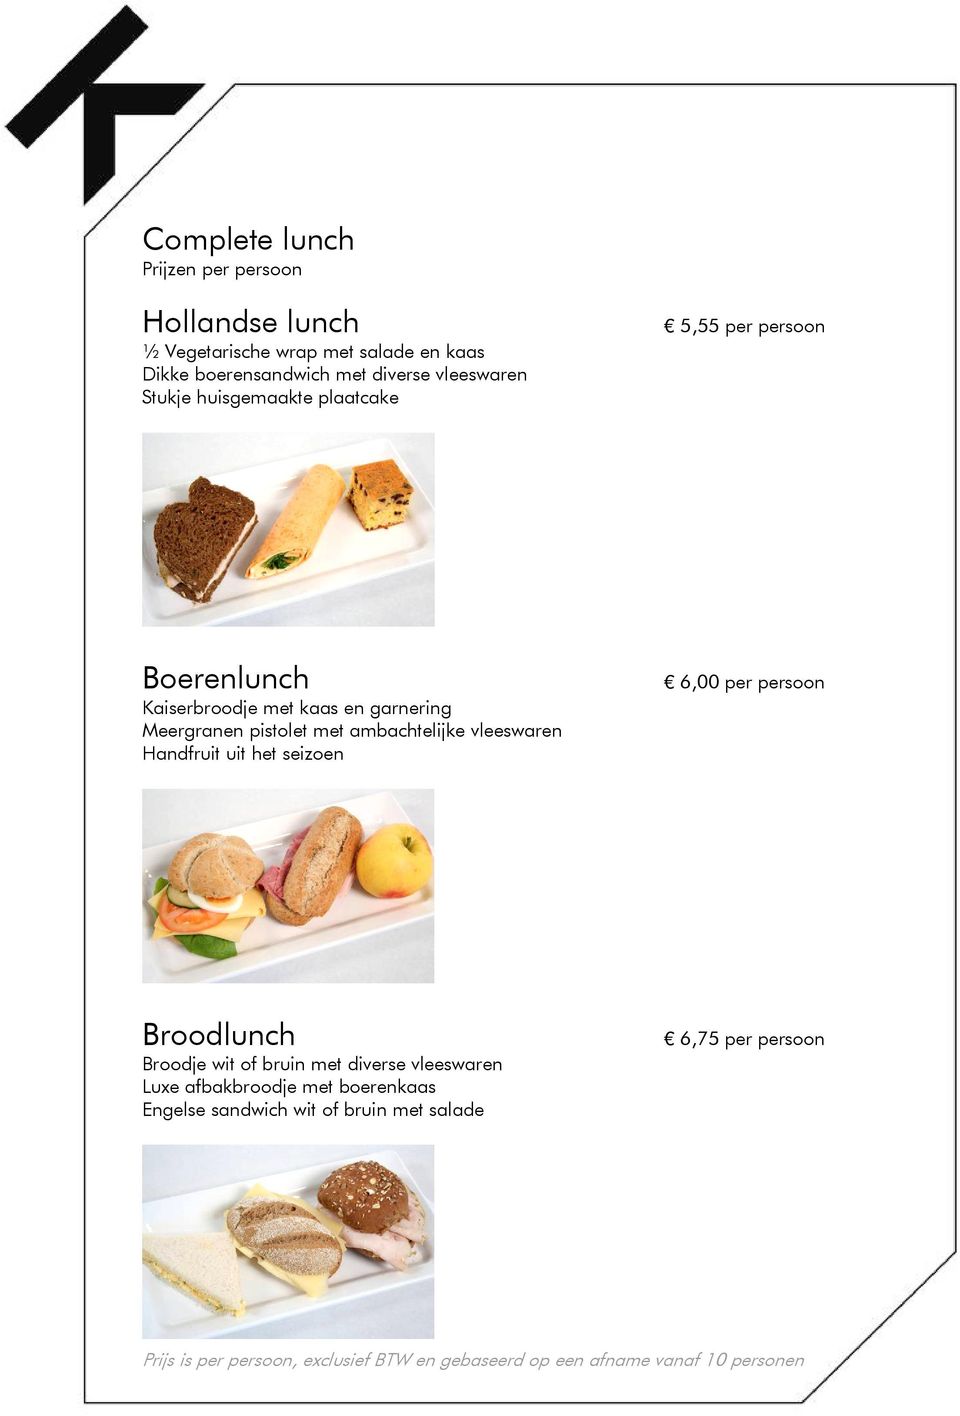 vleeswaren Handfruit uit het seizoen 6,00 per persoon Broodlunch Broodje wit of bruin met diverse vleeswaren Luxe afbakbroodje met